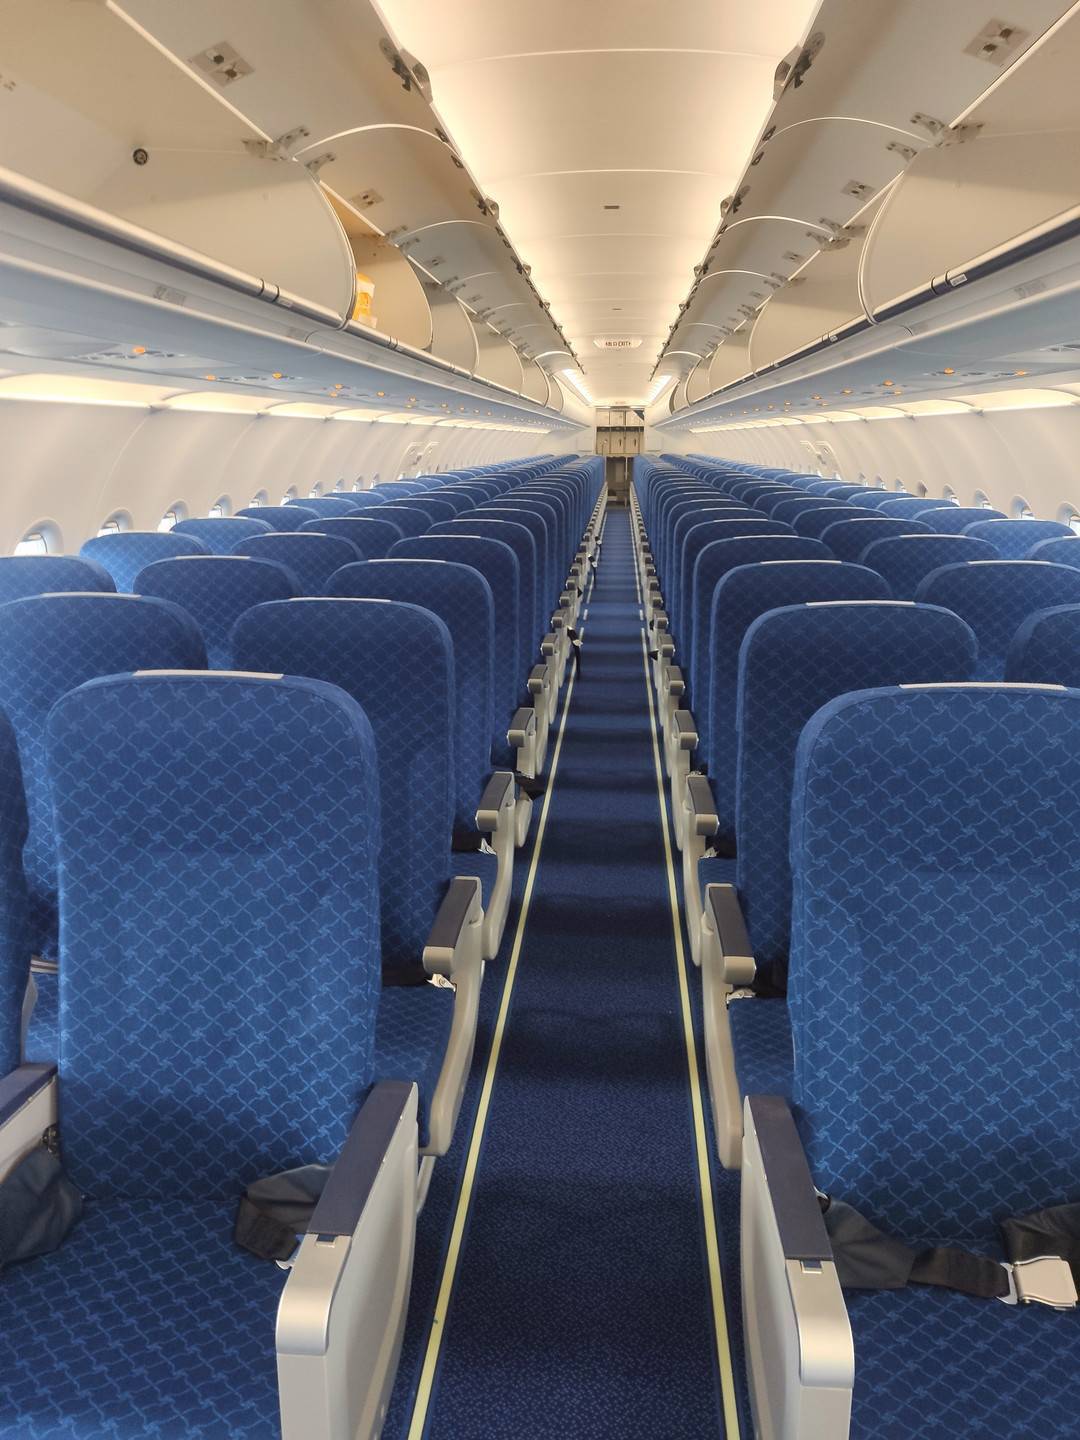 值得一提的是,客舱座椅是川航自引进空客飞机以来,首次使用的国产座椅